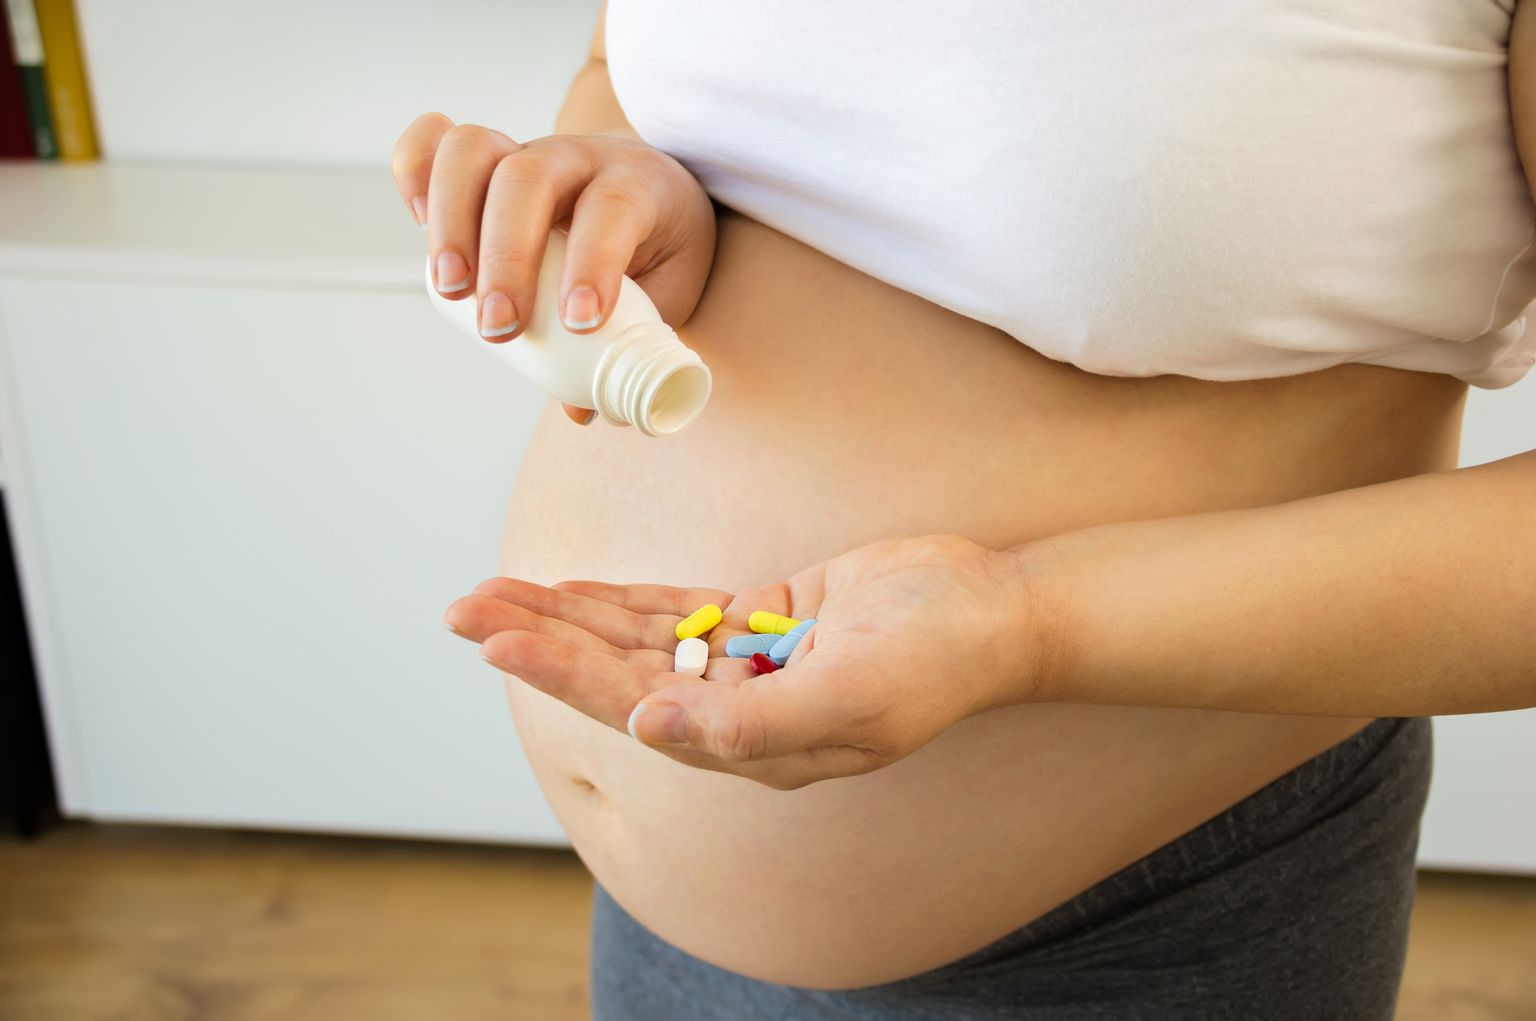 Tomar medicamentos durante a gravidez